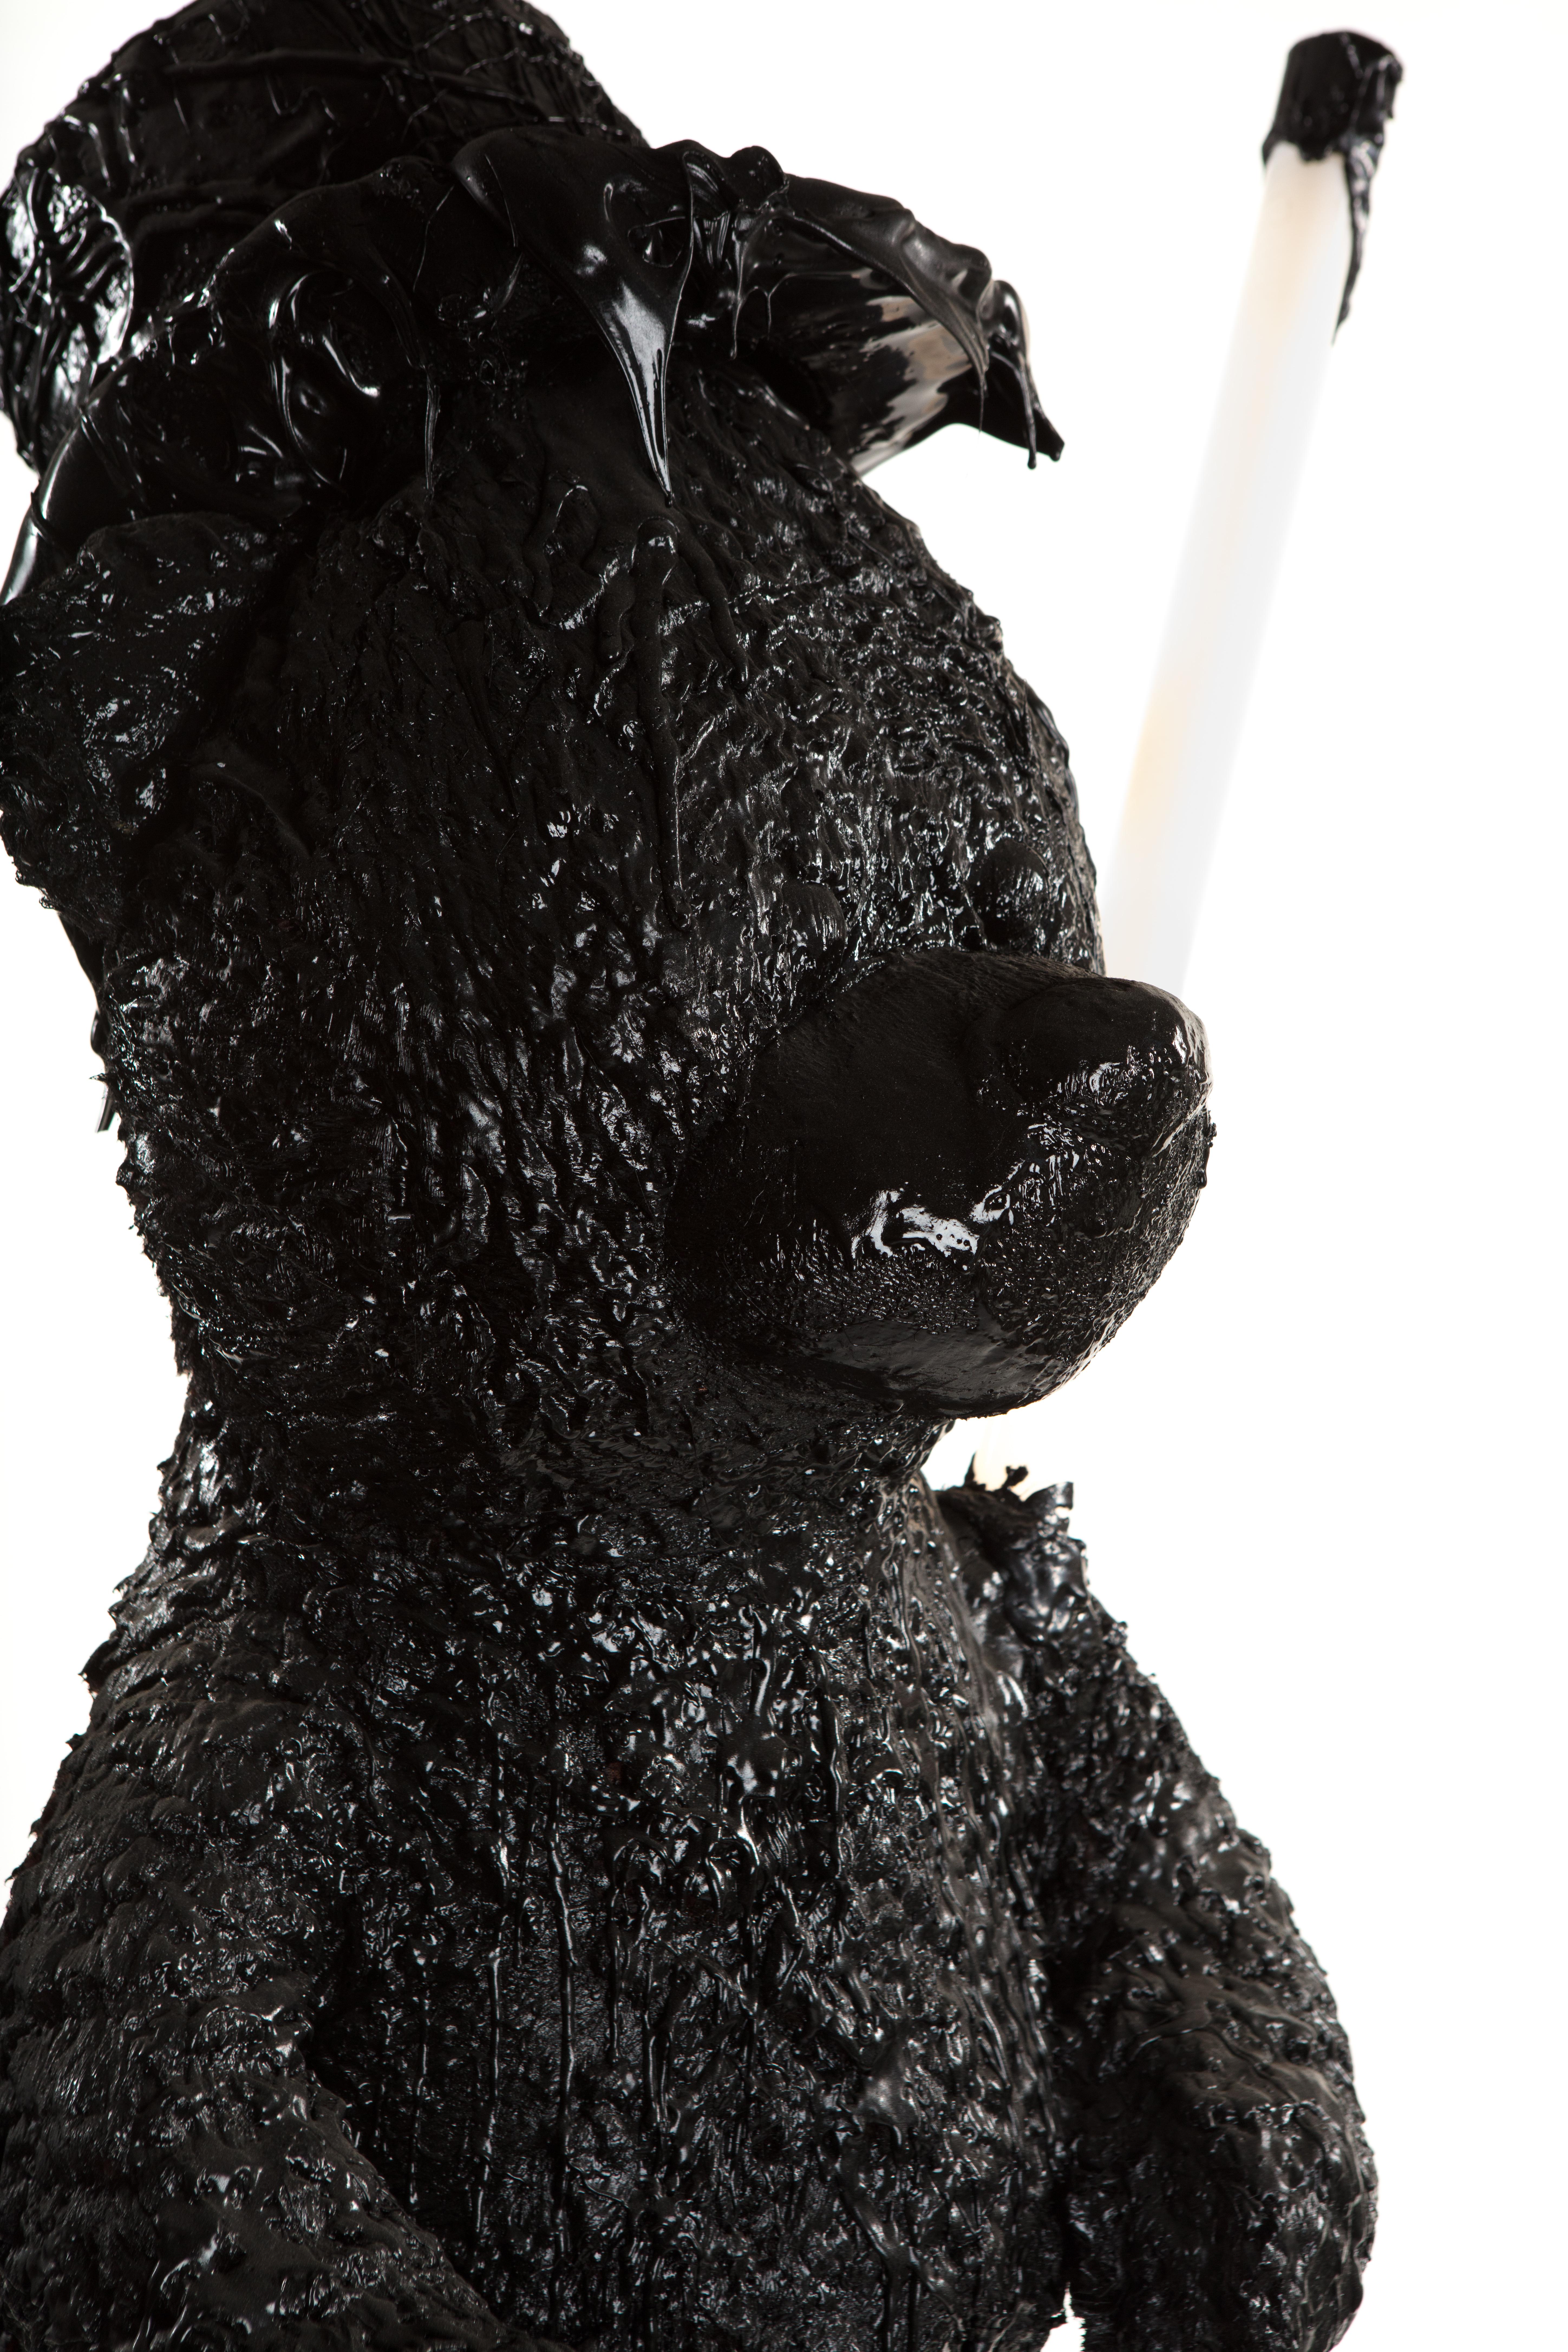 Black TAR Teddy Bear Floor Lamp or Sculpture, 21st Century by Mattia Biagi For Sale 5